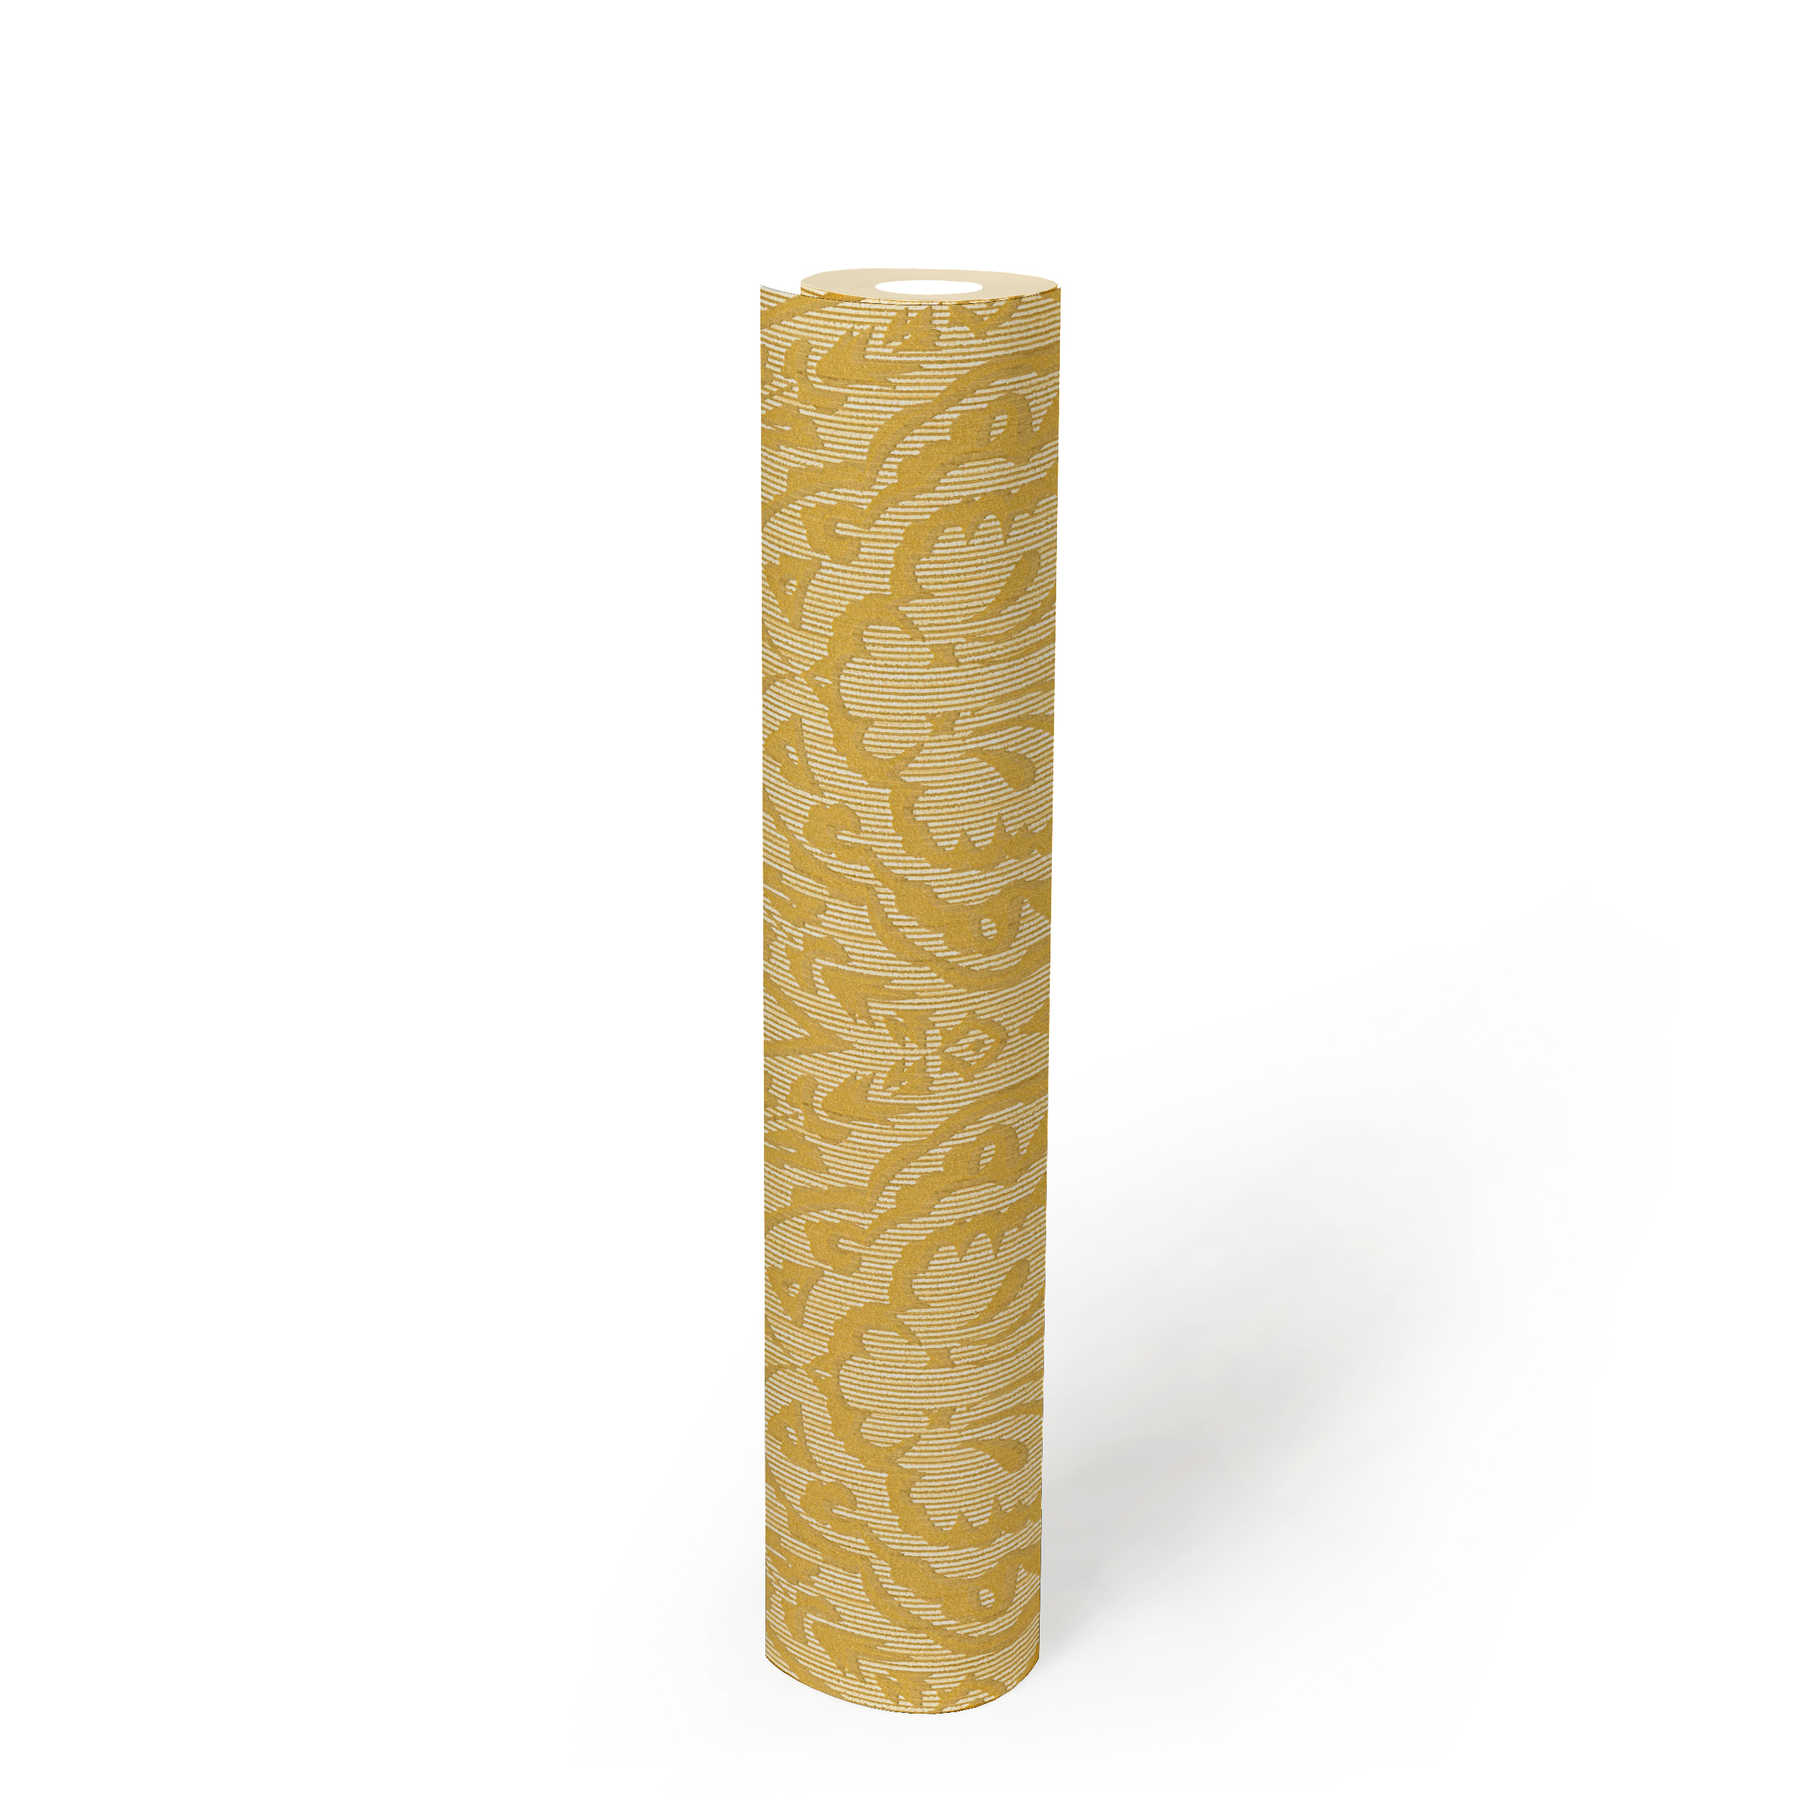             Carta da parati in tessuto non tessuto con struttura e motivi ornamentali - giallo
        